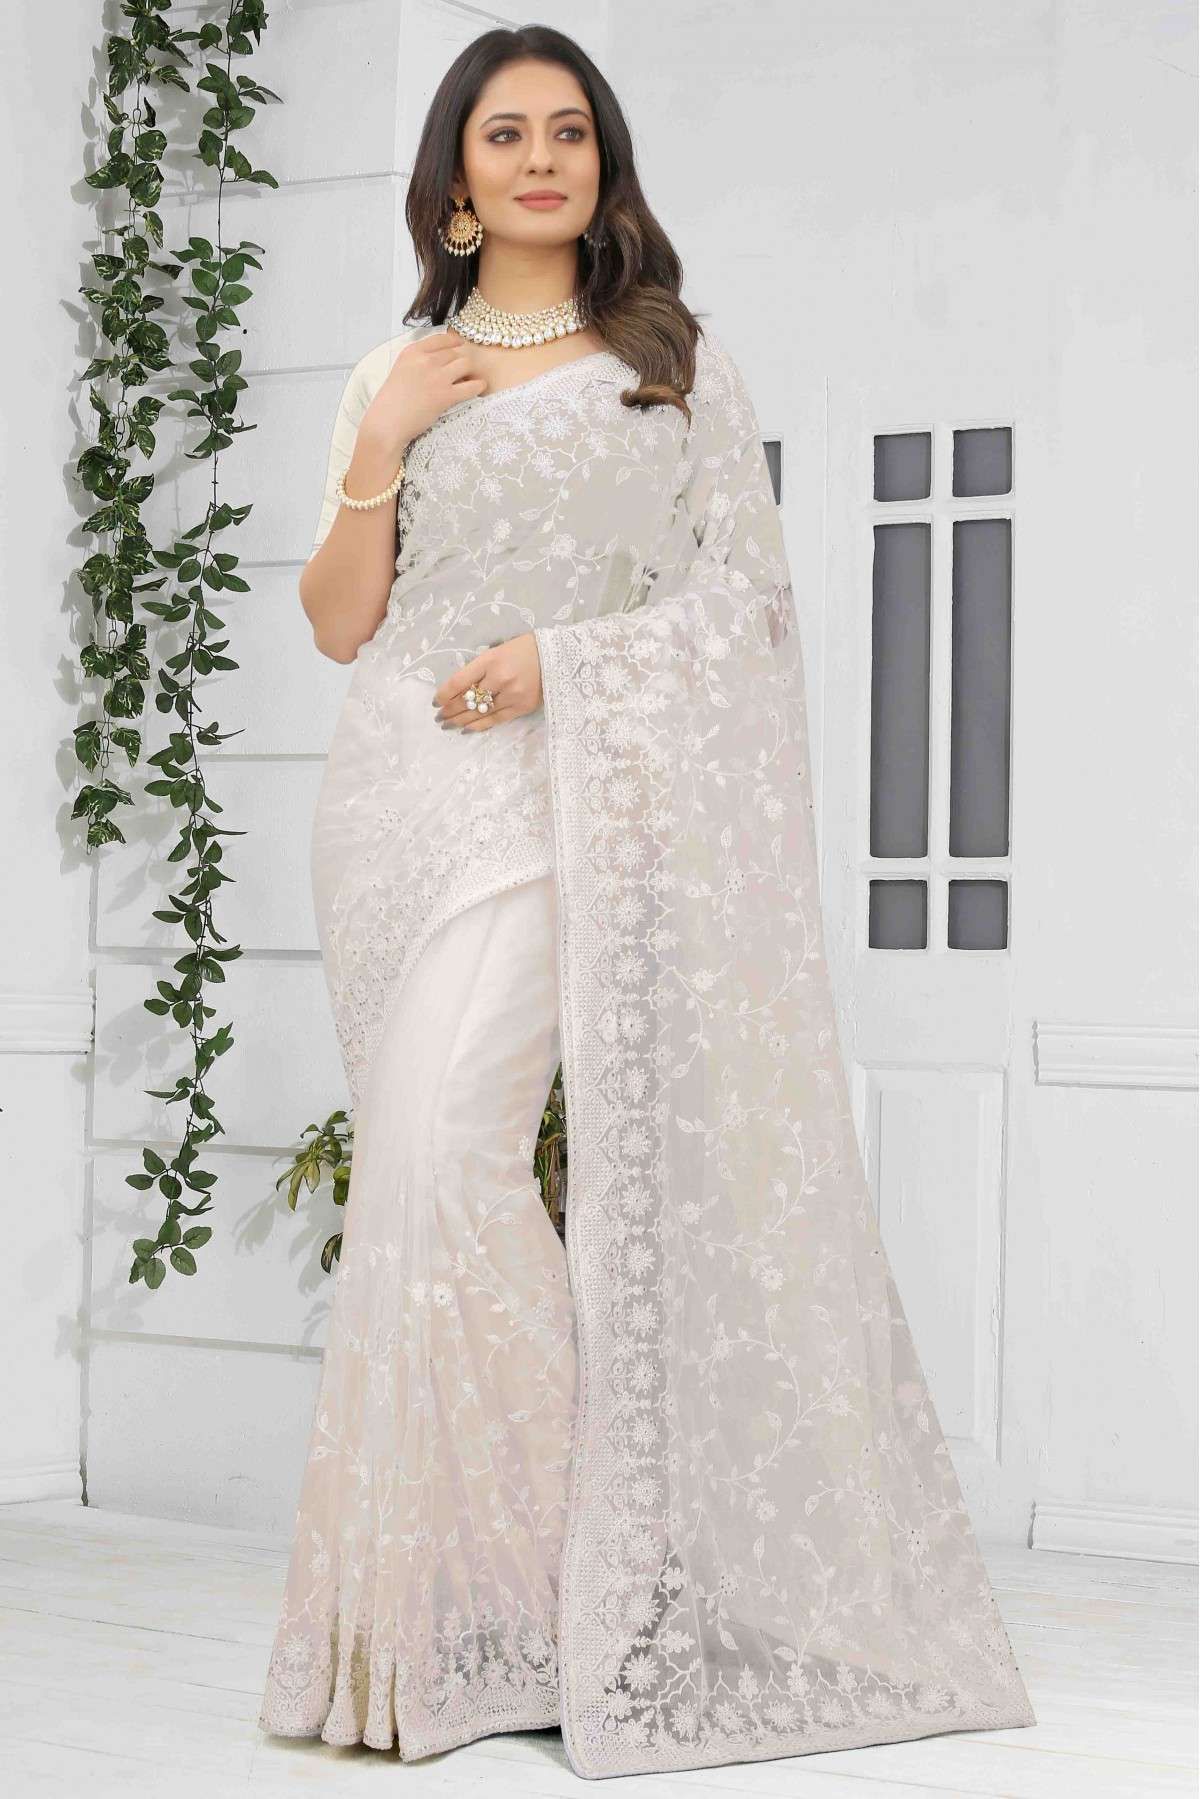 Net Embroidery Saree In White Colour - SR4690781